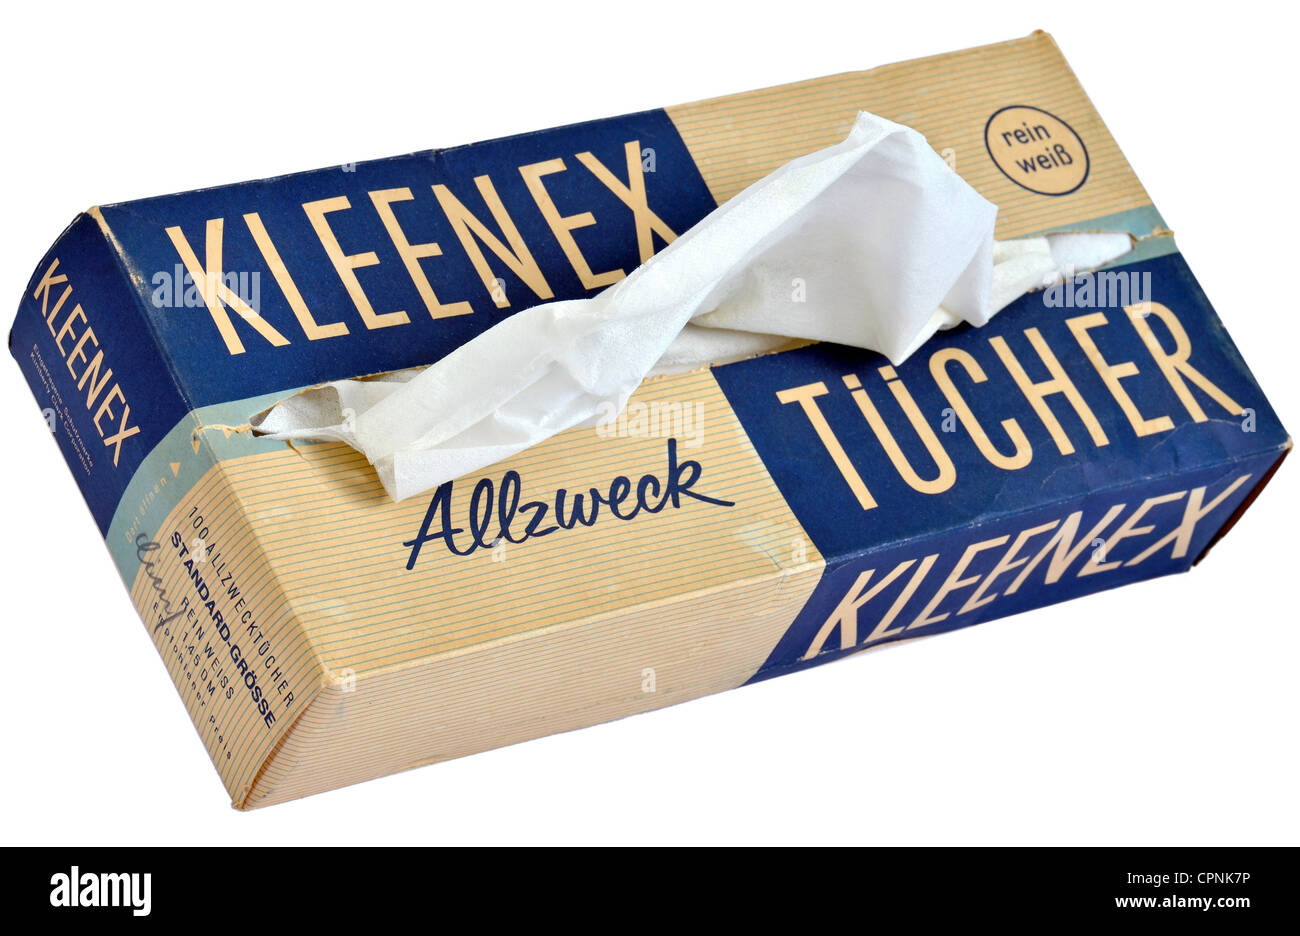 Kosmetik, Kleenex Tissues, 100 Allzweckgewebe, hergestellt von der Zellwatte GmbH Hamburg, ehemals unverbindliche Preisempfehlung: 1.45 DM, Kimberly Clark Corporation, Spenderbox, Deutschland, um 1960, Additional-Rights-Clearences-Not available Stockfoto